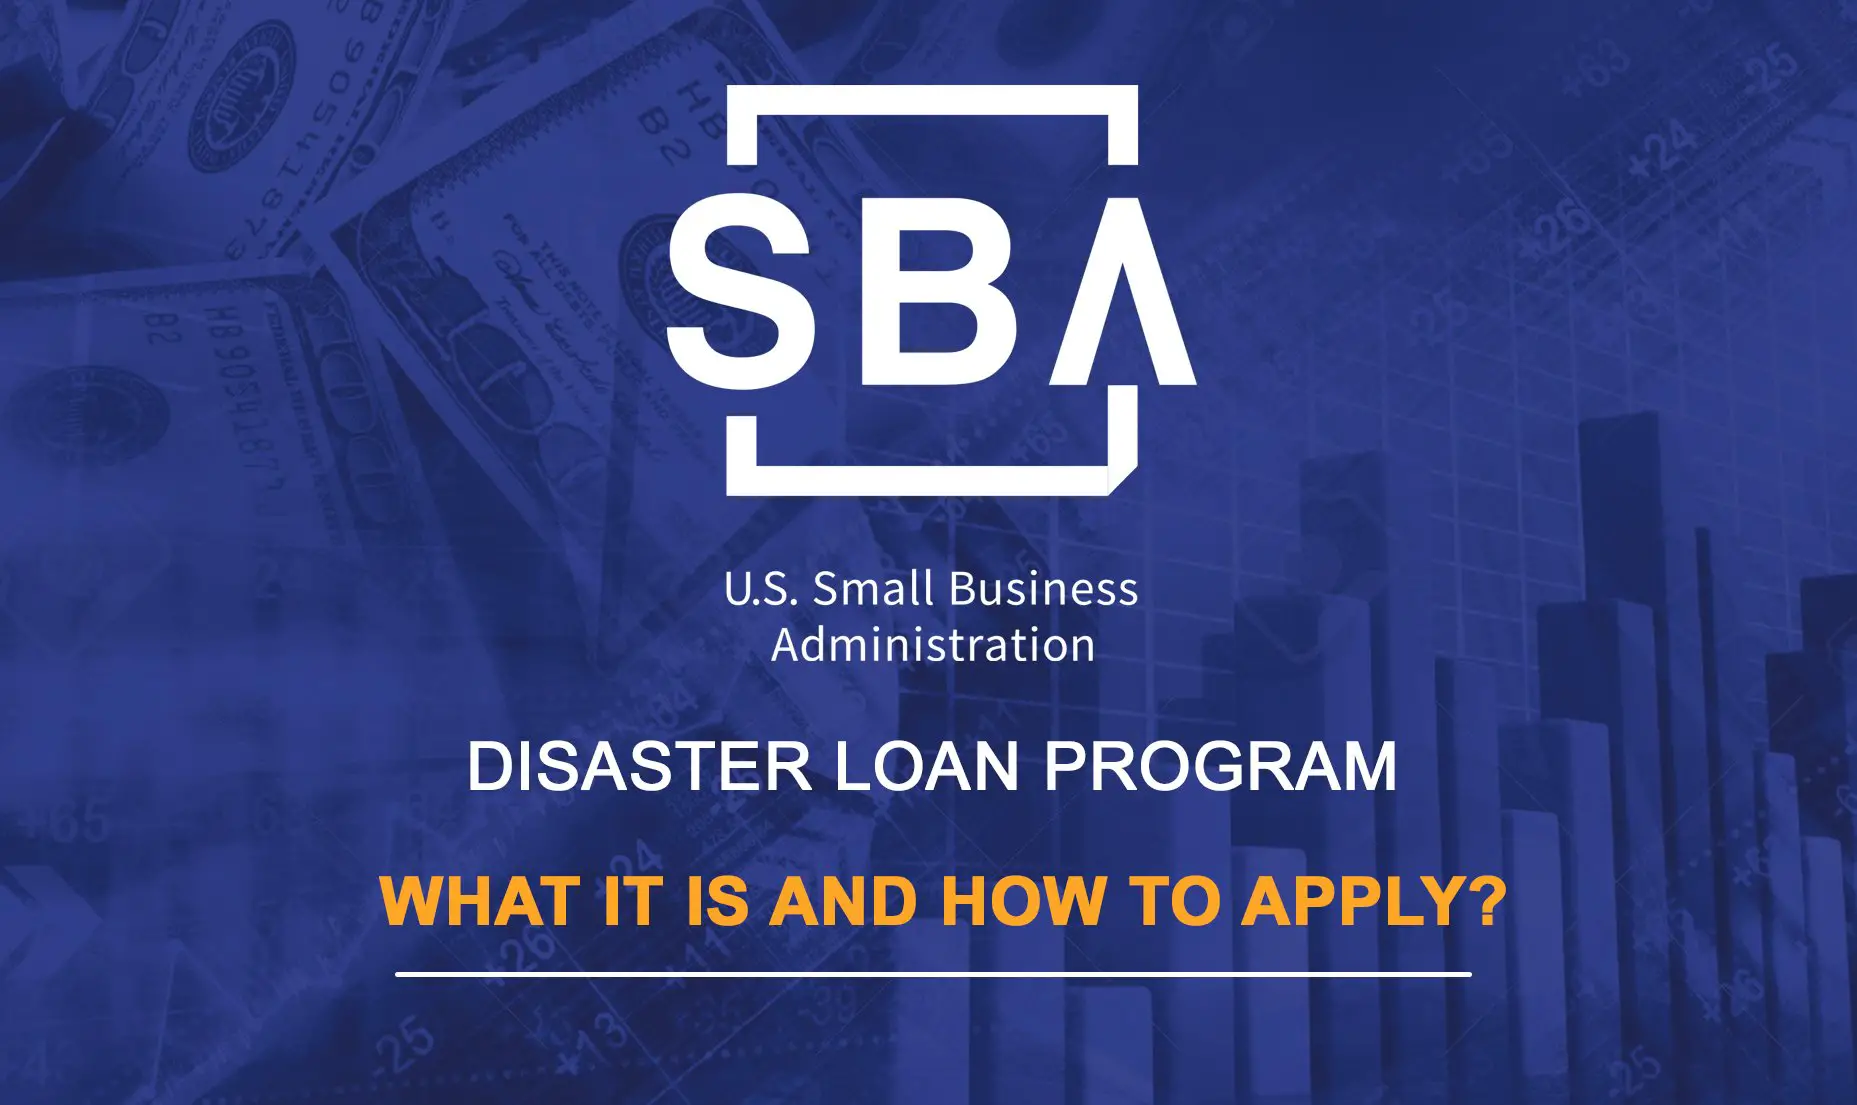 The SBA Disaster Loan Program